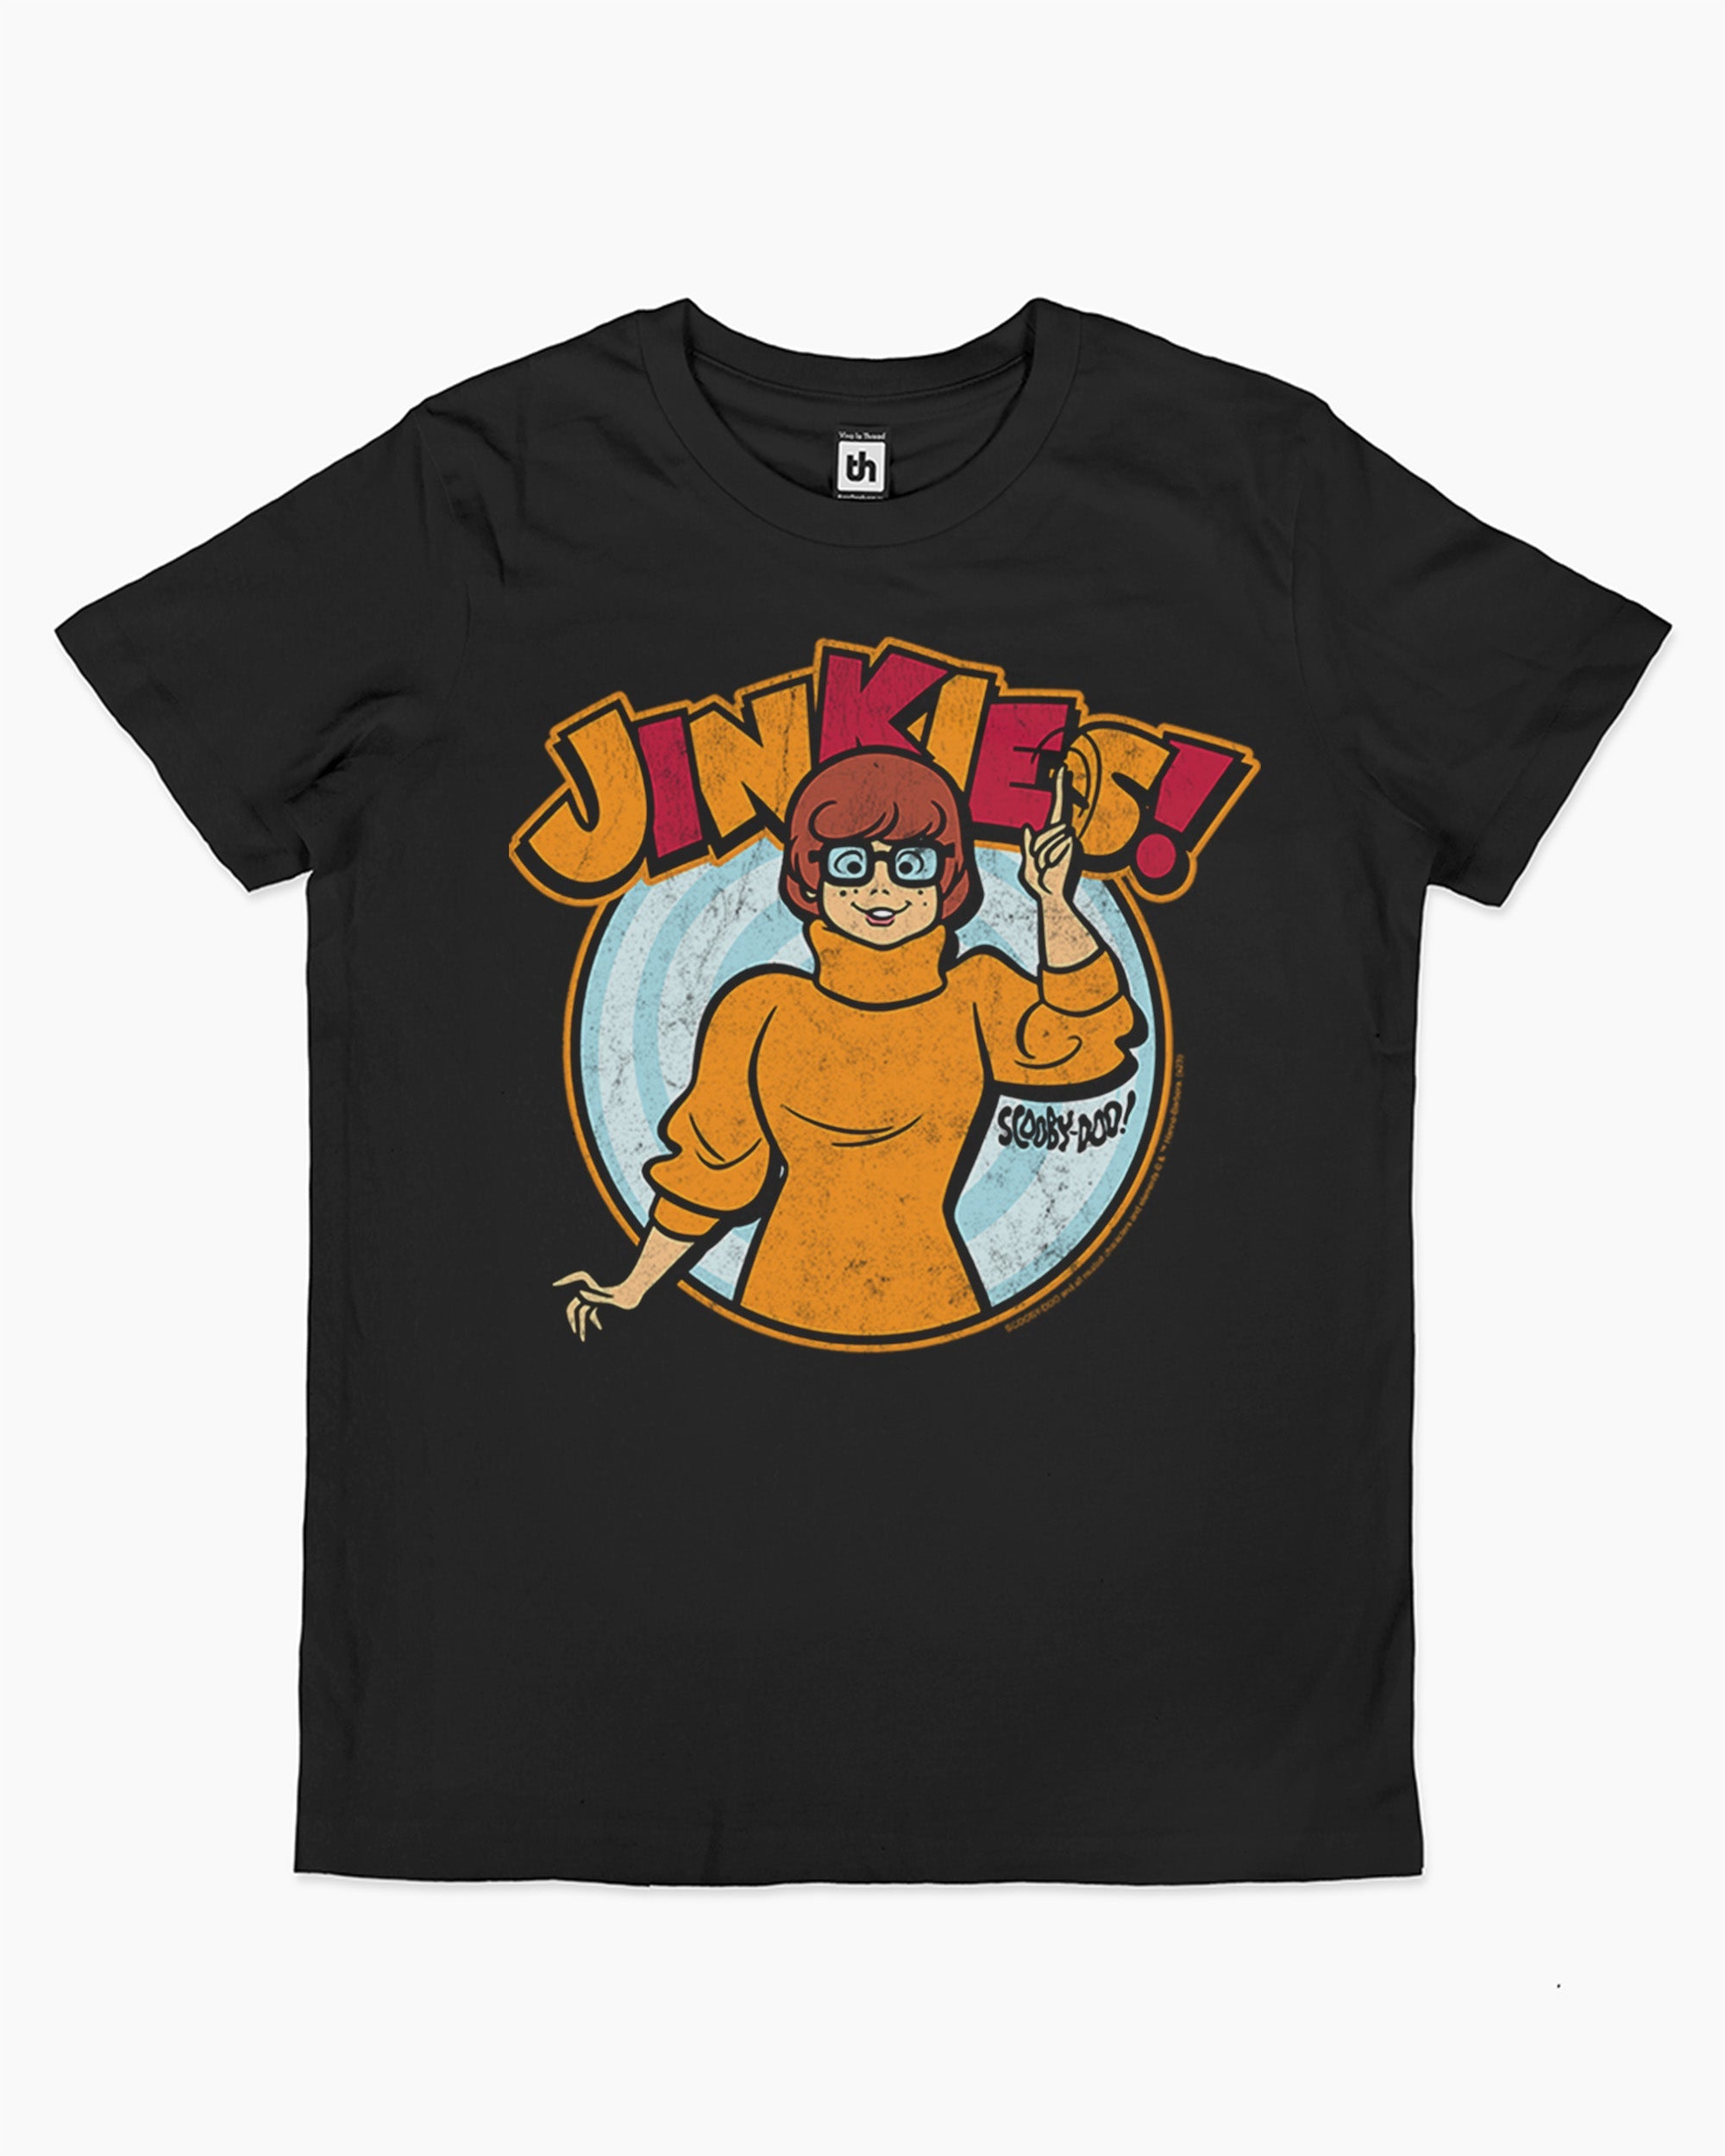 Jinkies Kids T-Shirt Australia Online Black